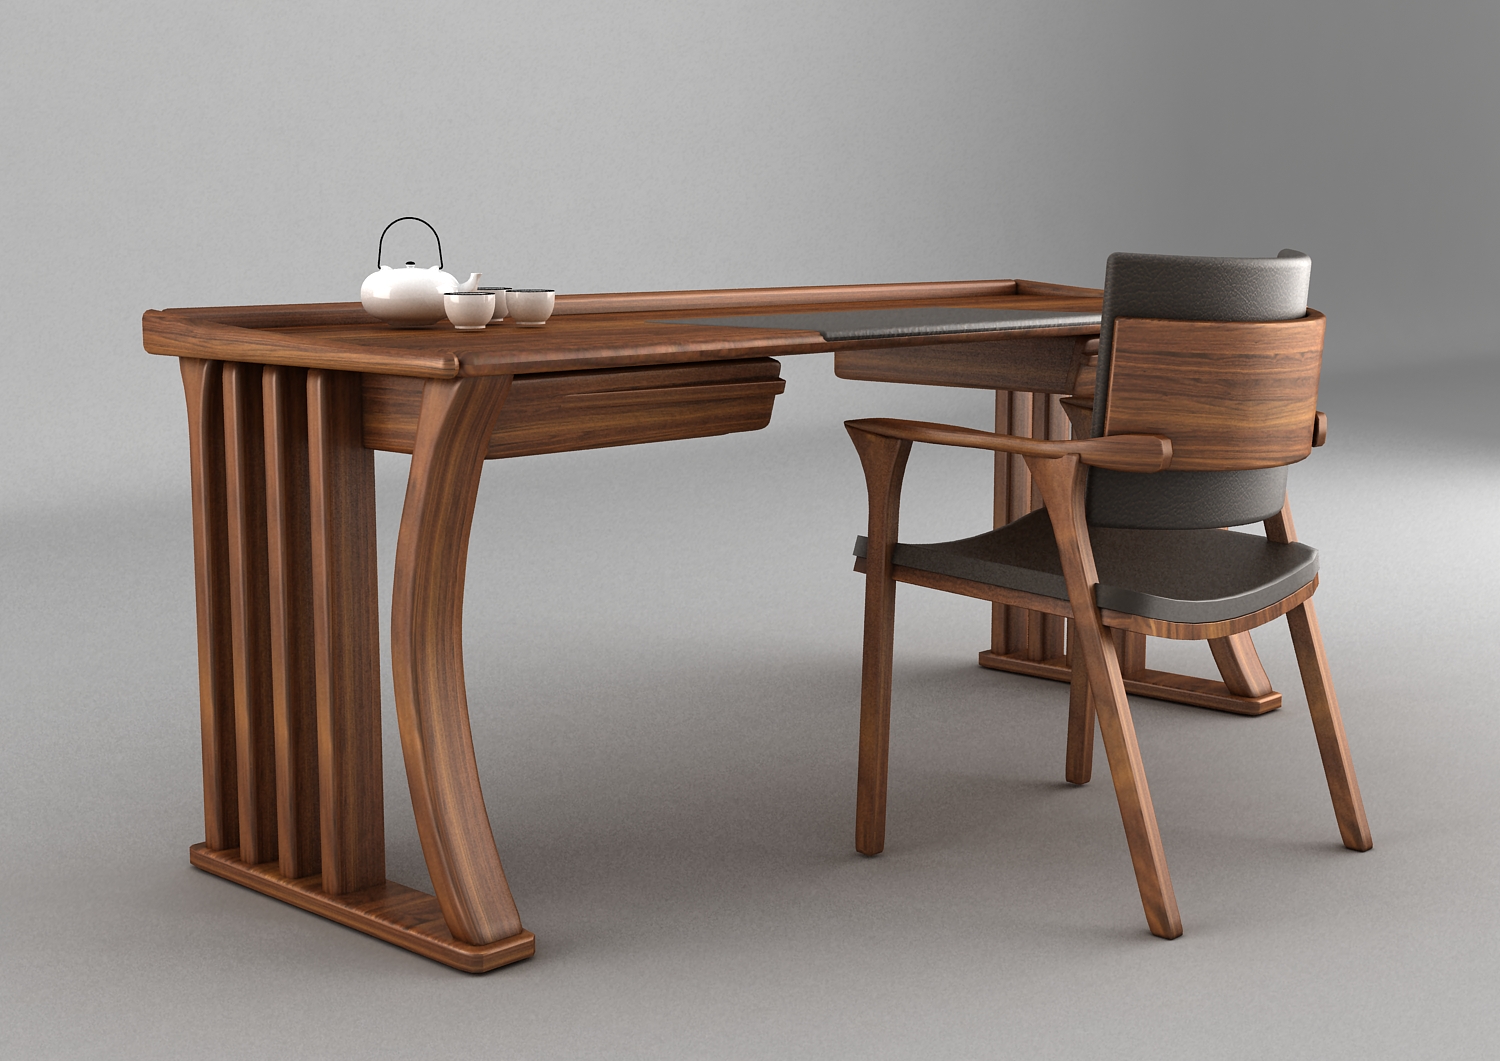 汲取中国传统家具中的元素,于细节处将桌椅